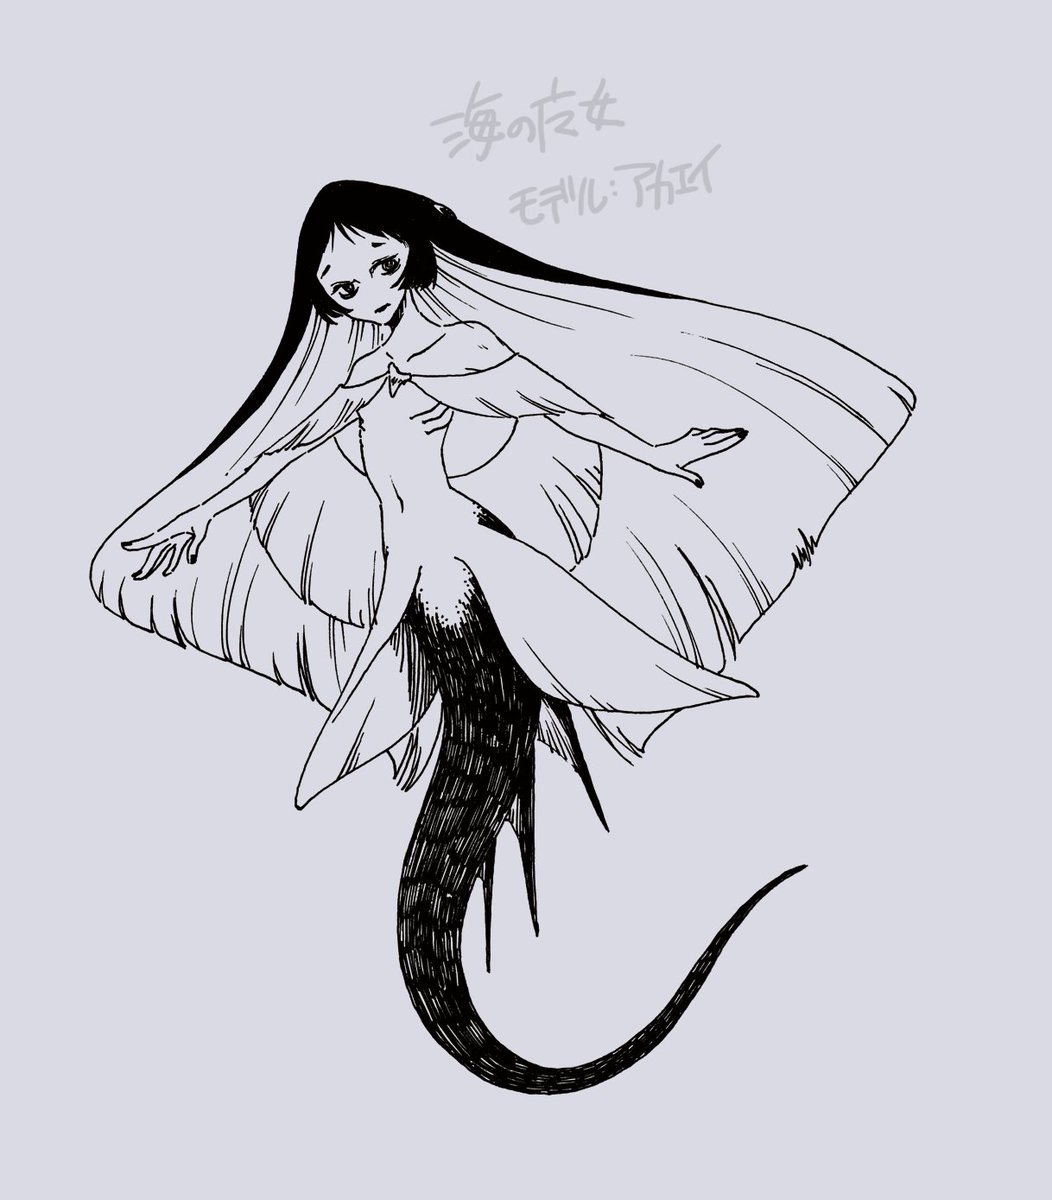 人魚姫の海の魔女描きたいな ってなったけどタコとかは有名なのいるから 別のモチーフをと考えた結果エイになりました。  デビルフィッシュっていうよね! って思ったけどオニイトマキエイのことだから アカエイ全然関係なかったです。